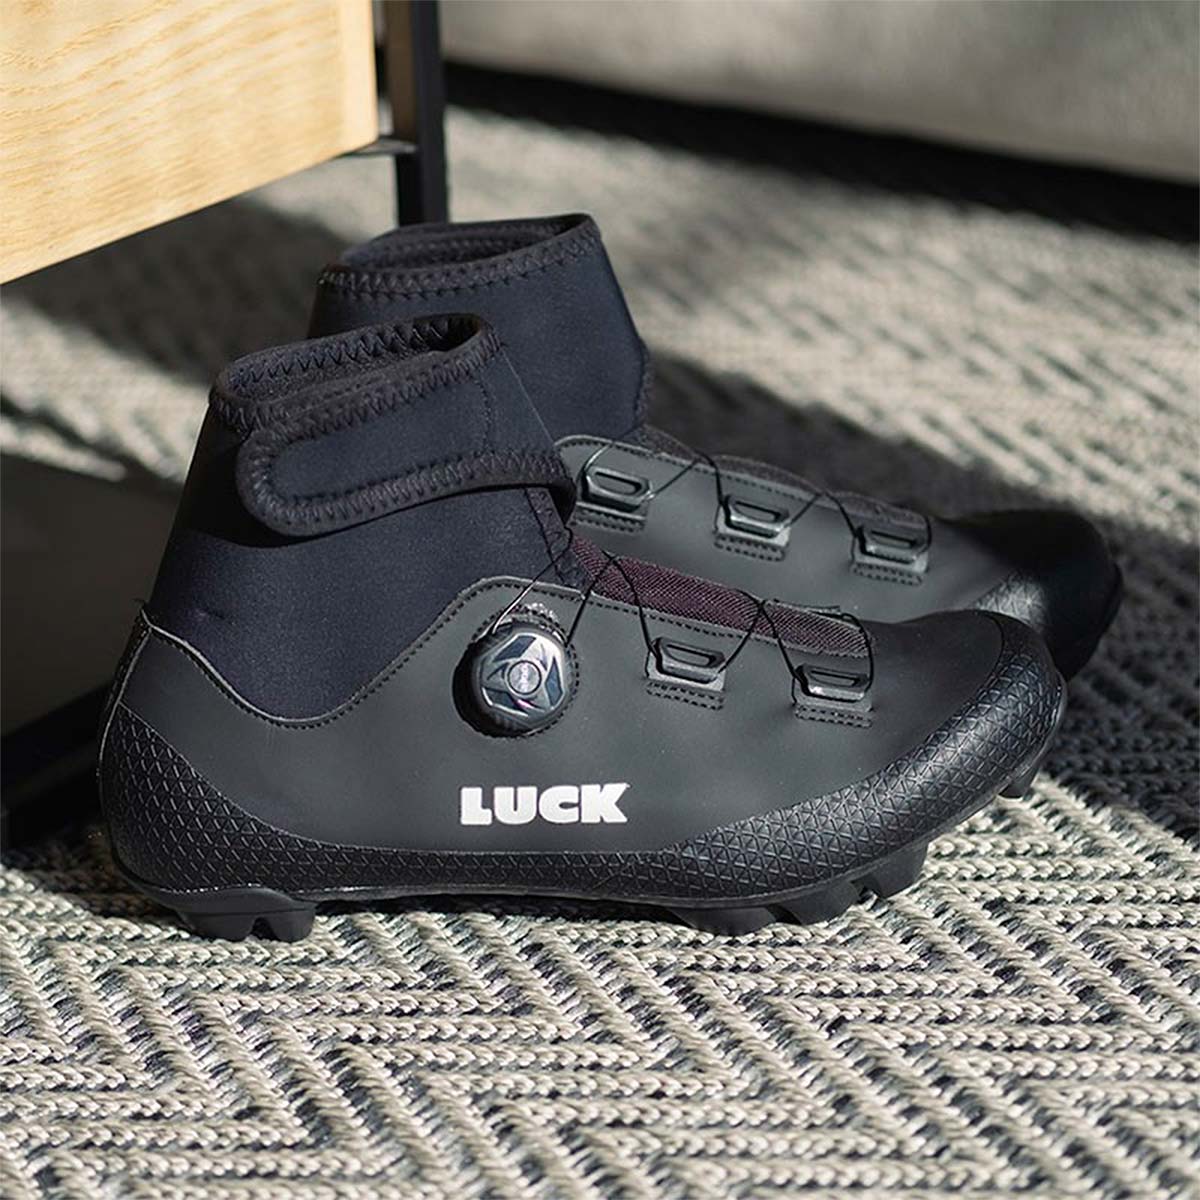 Luck Fenix, unas zapatillas pensadas para las salidas en condiciones de clima más adversas